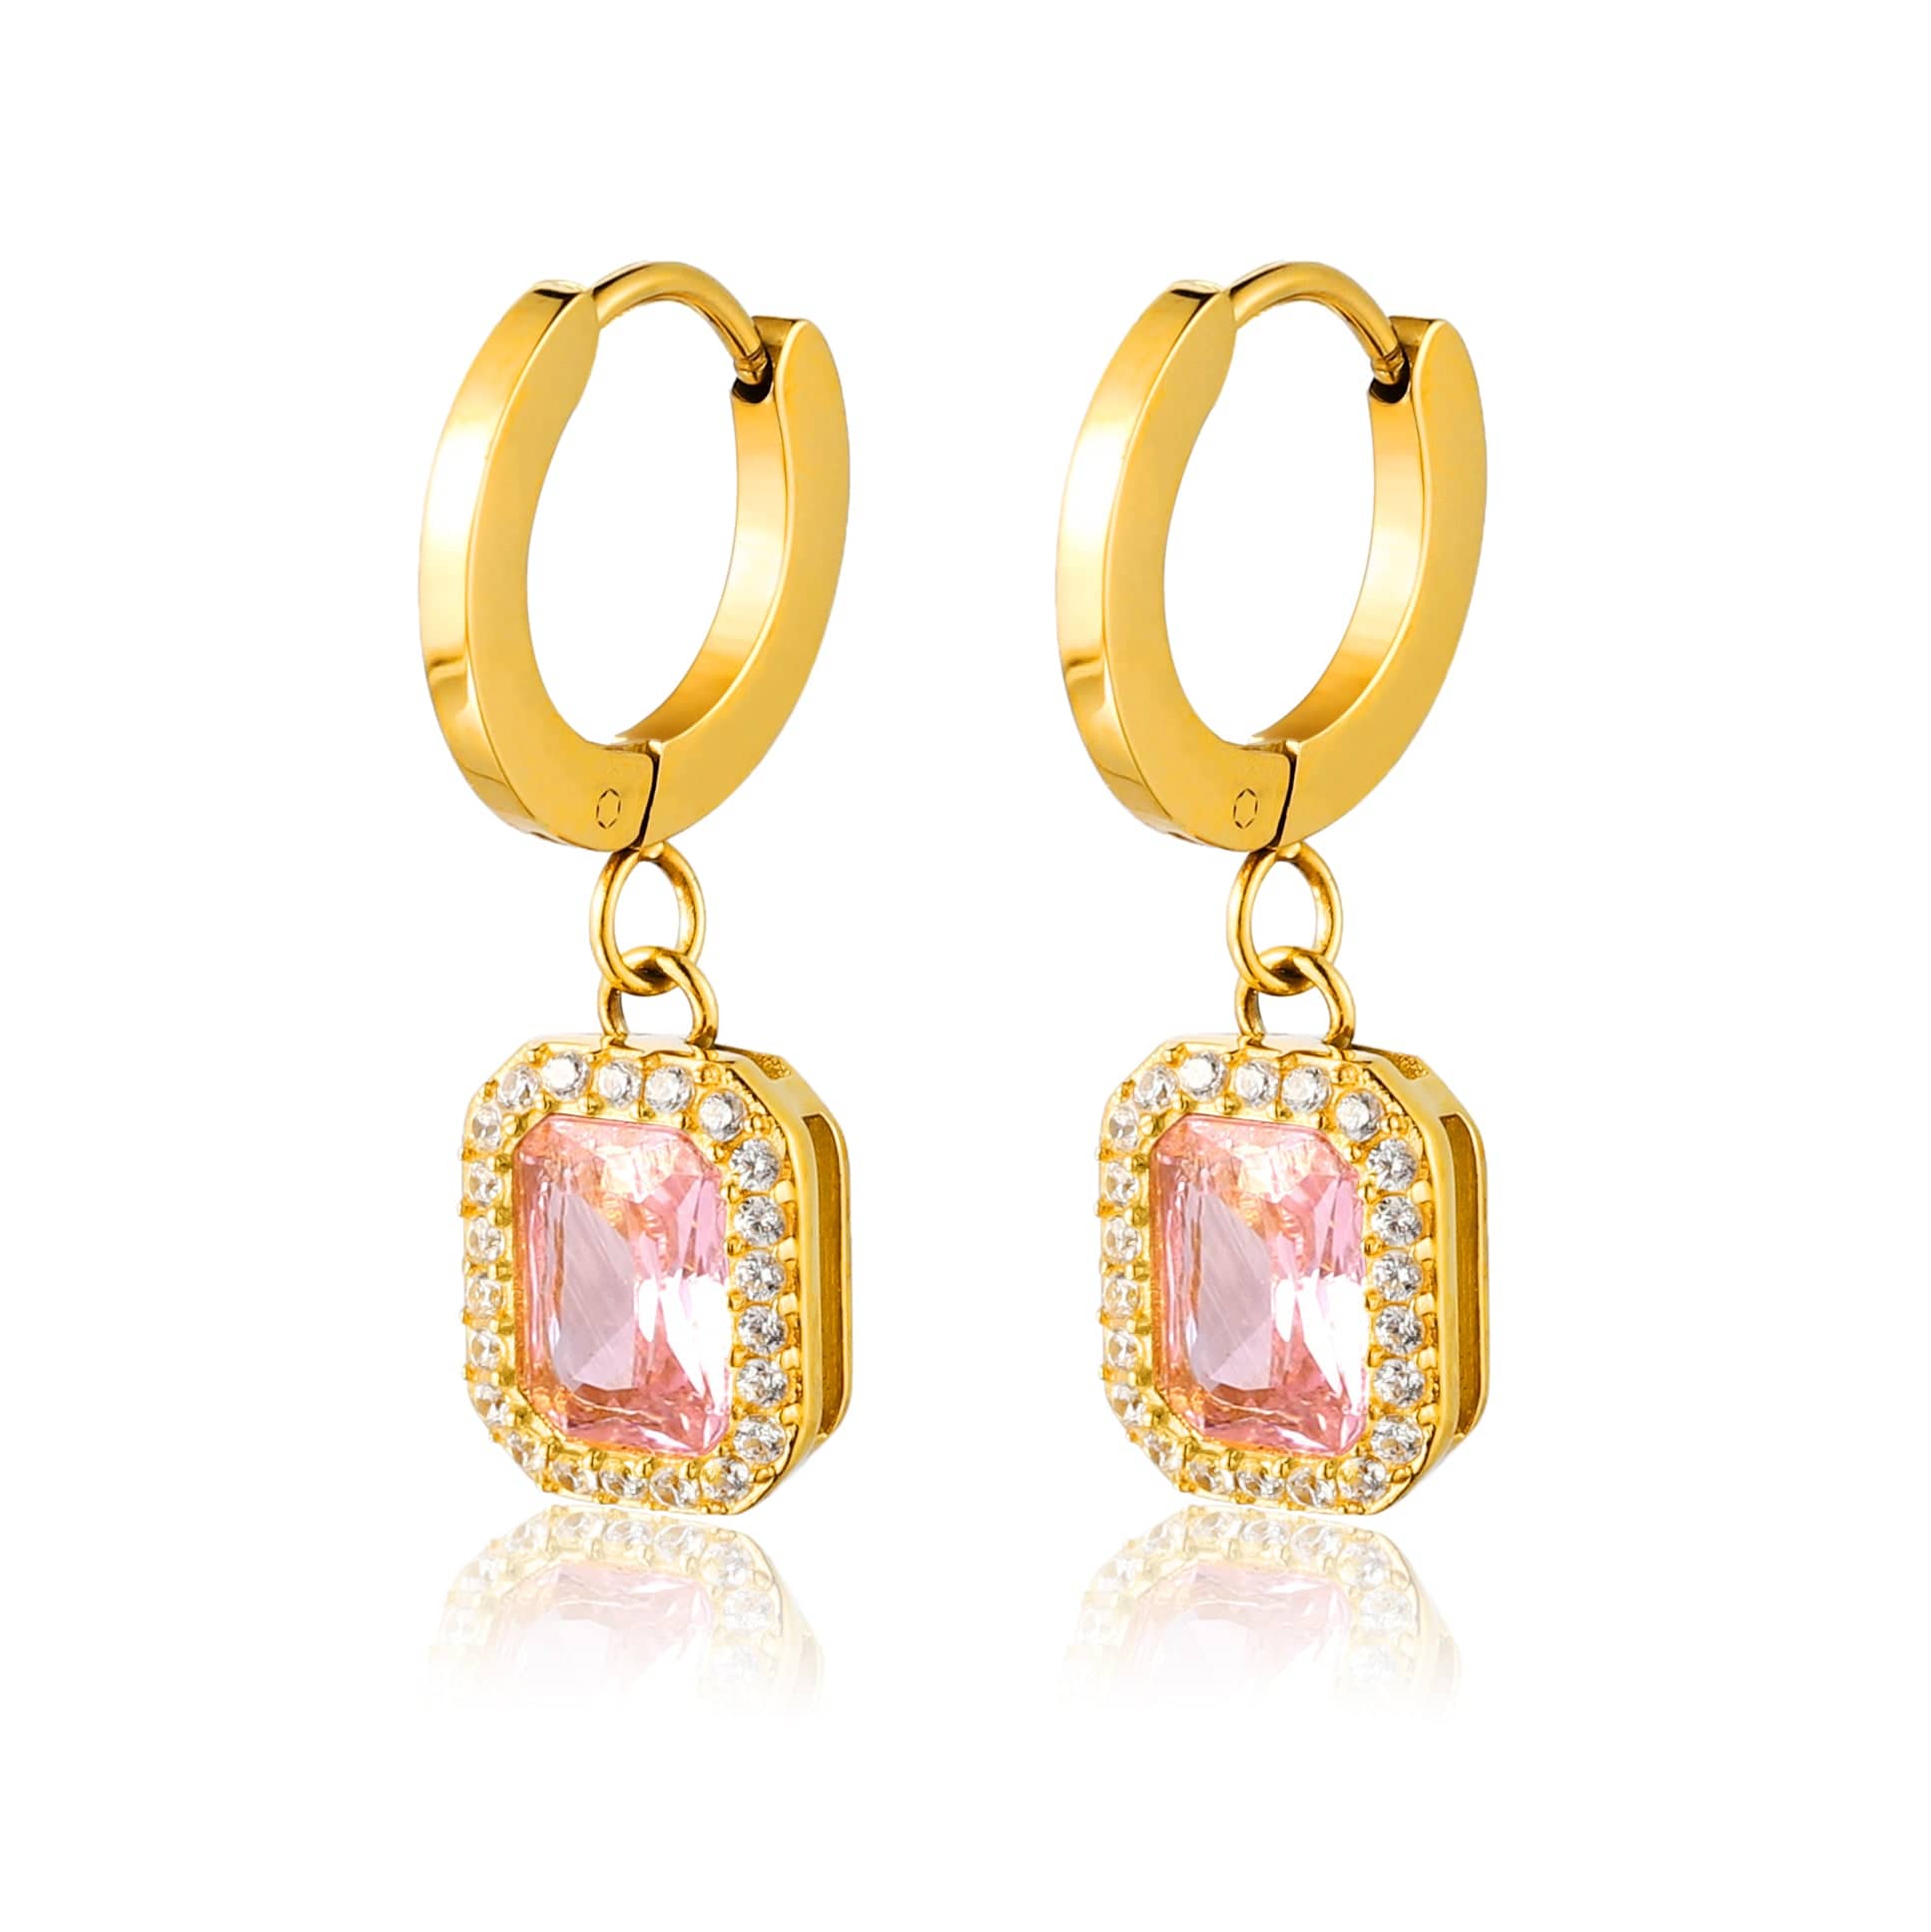 bianco rosso Earrings Pink Stone Hoop Earrings cyprus greece jewelry gift free shipping europe worldwide